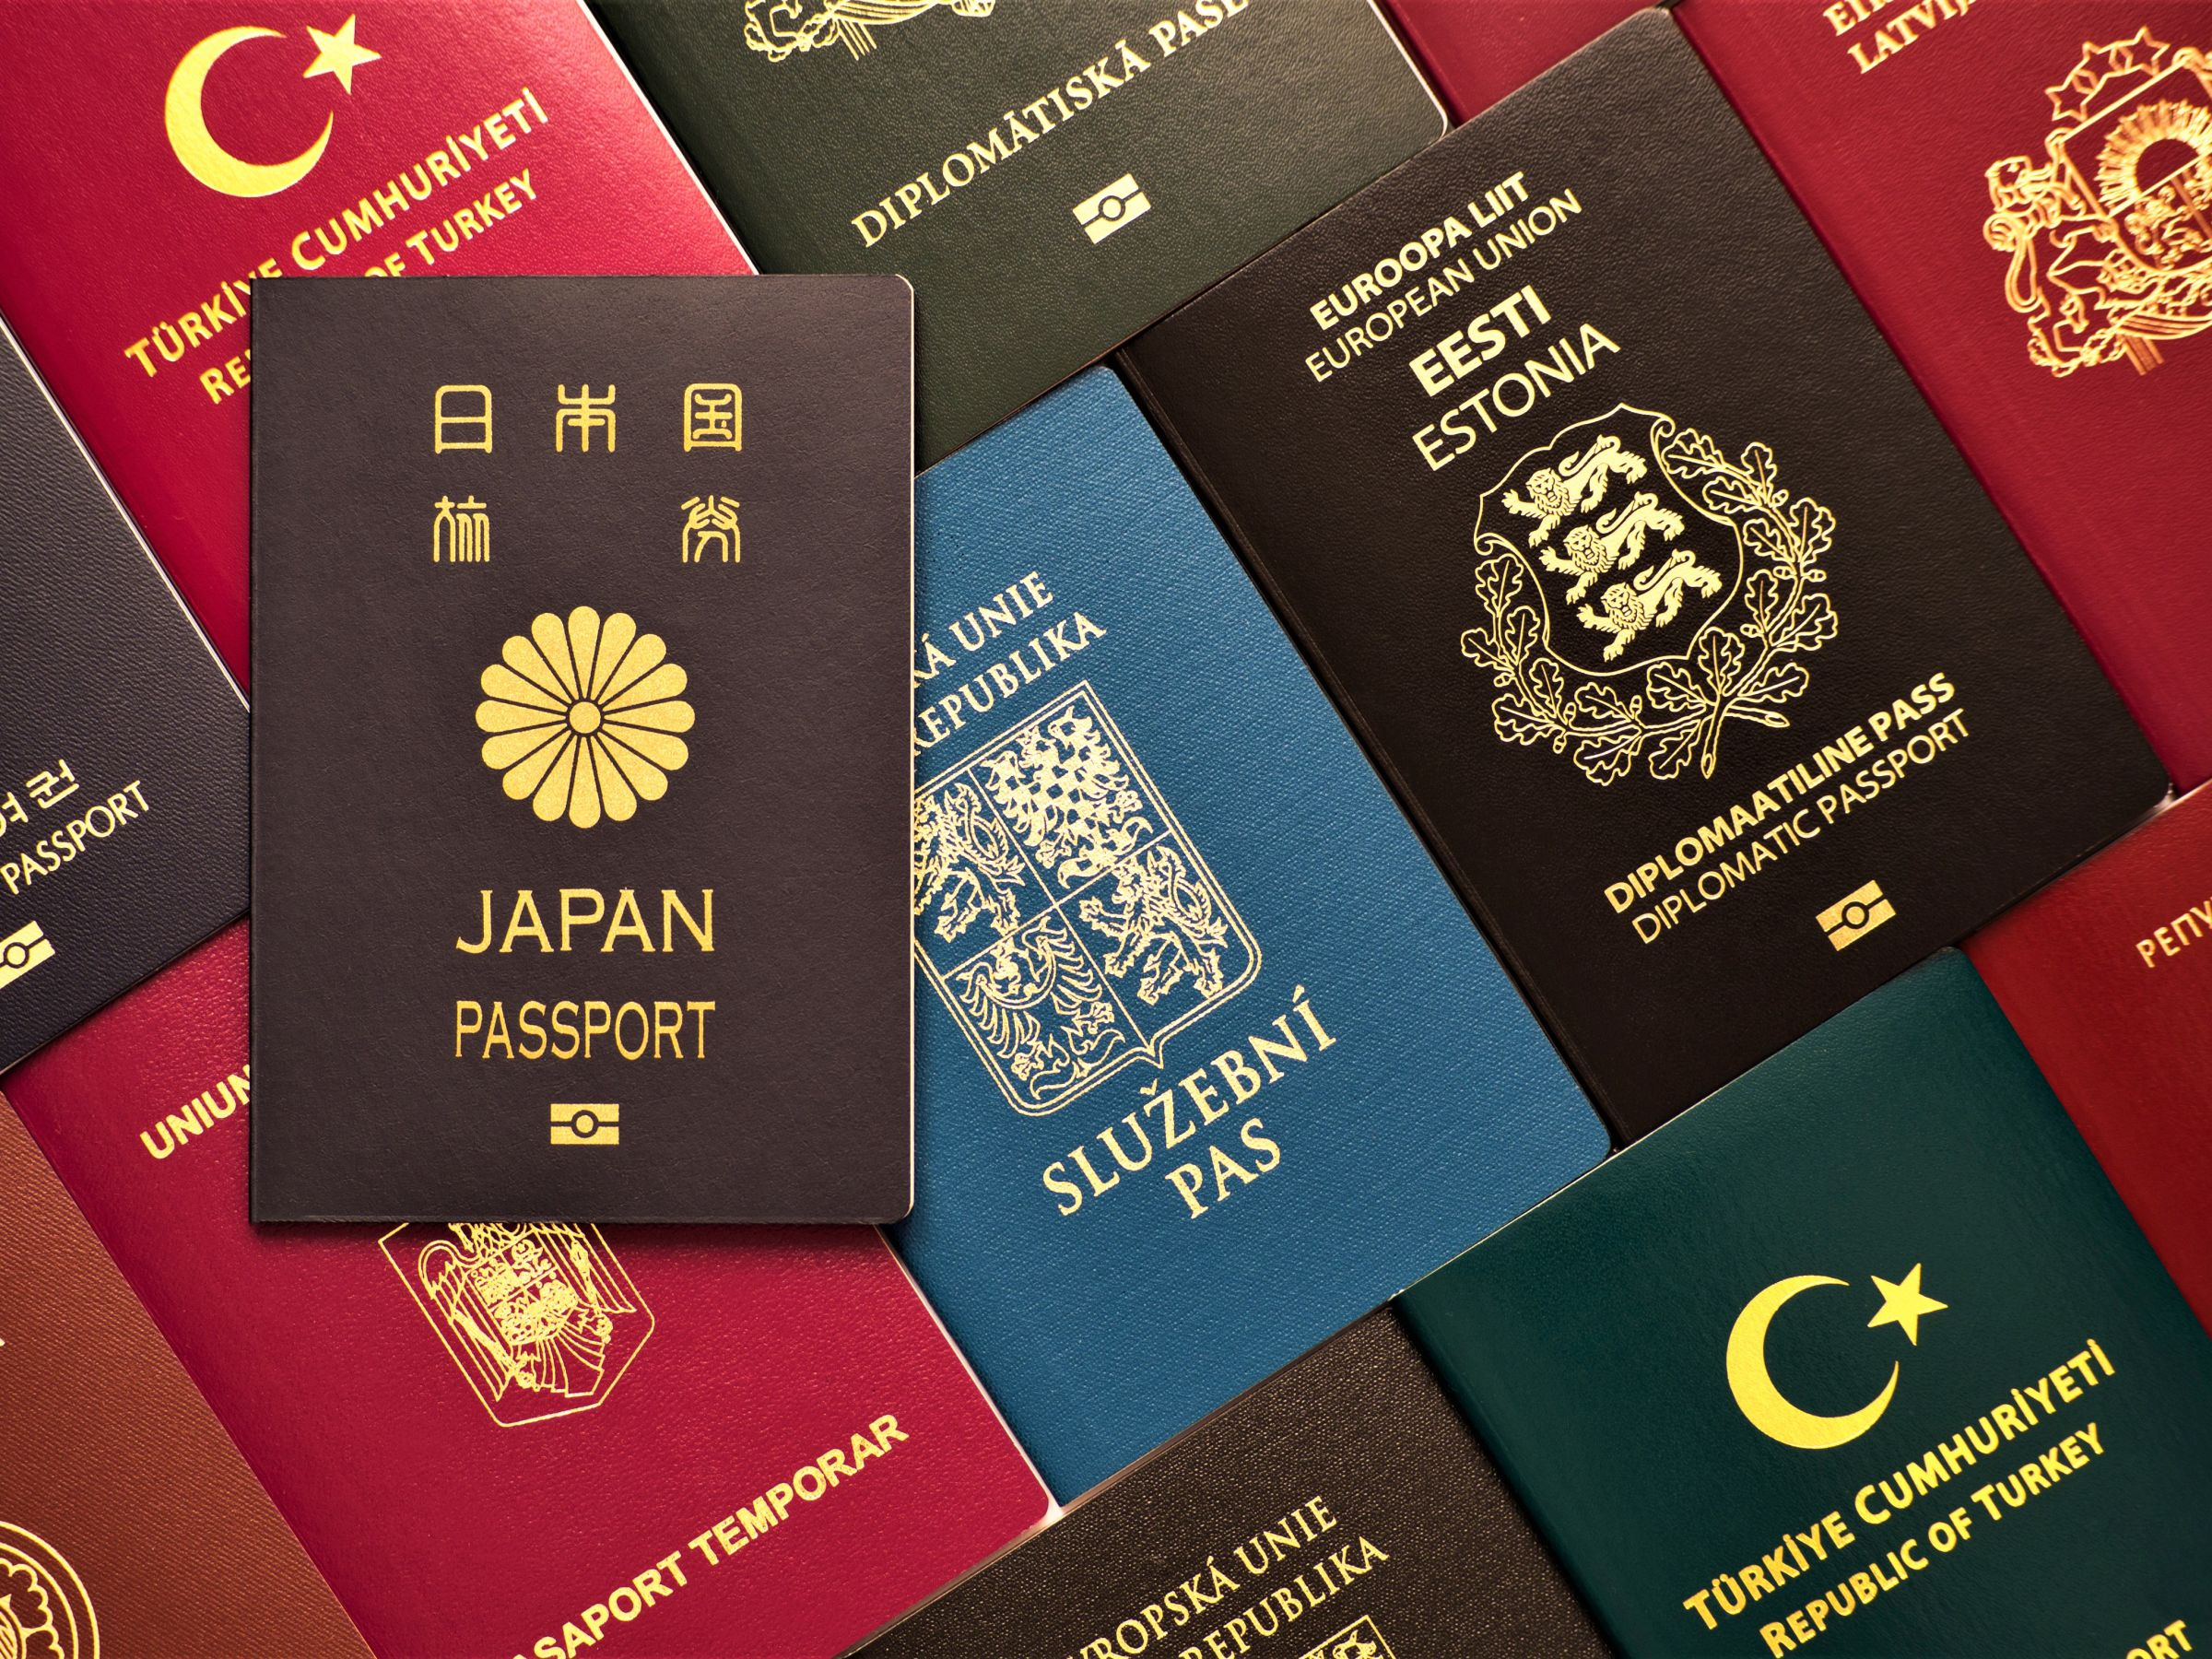 Gia hạn cư trú thêm 30 ngày cho người nước ngoài cư trú hợp pháp tại Đài Loan trên 180 ngày lần thứ 15. (Nguồn ảnh: Sở Di dân)